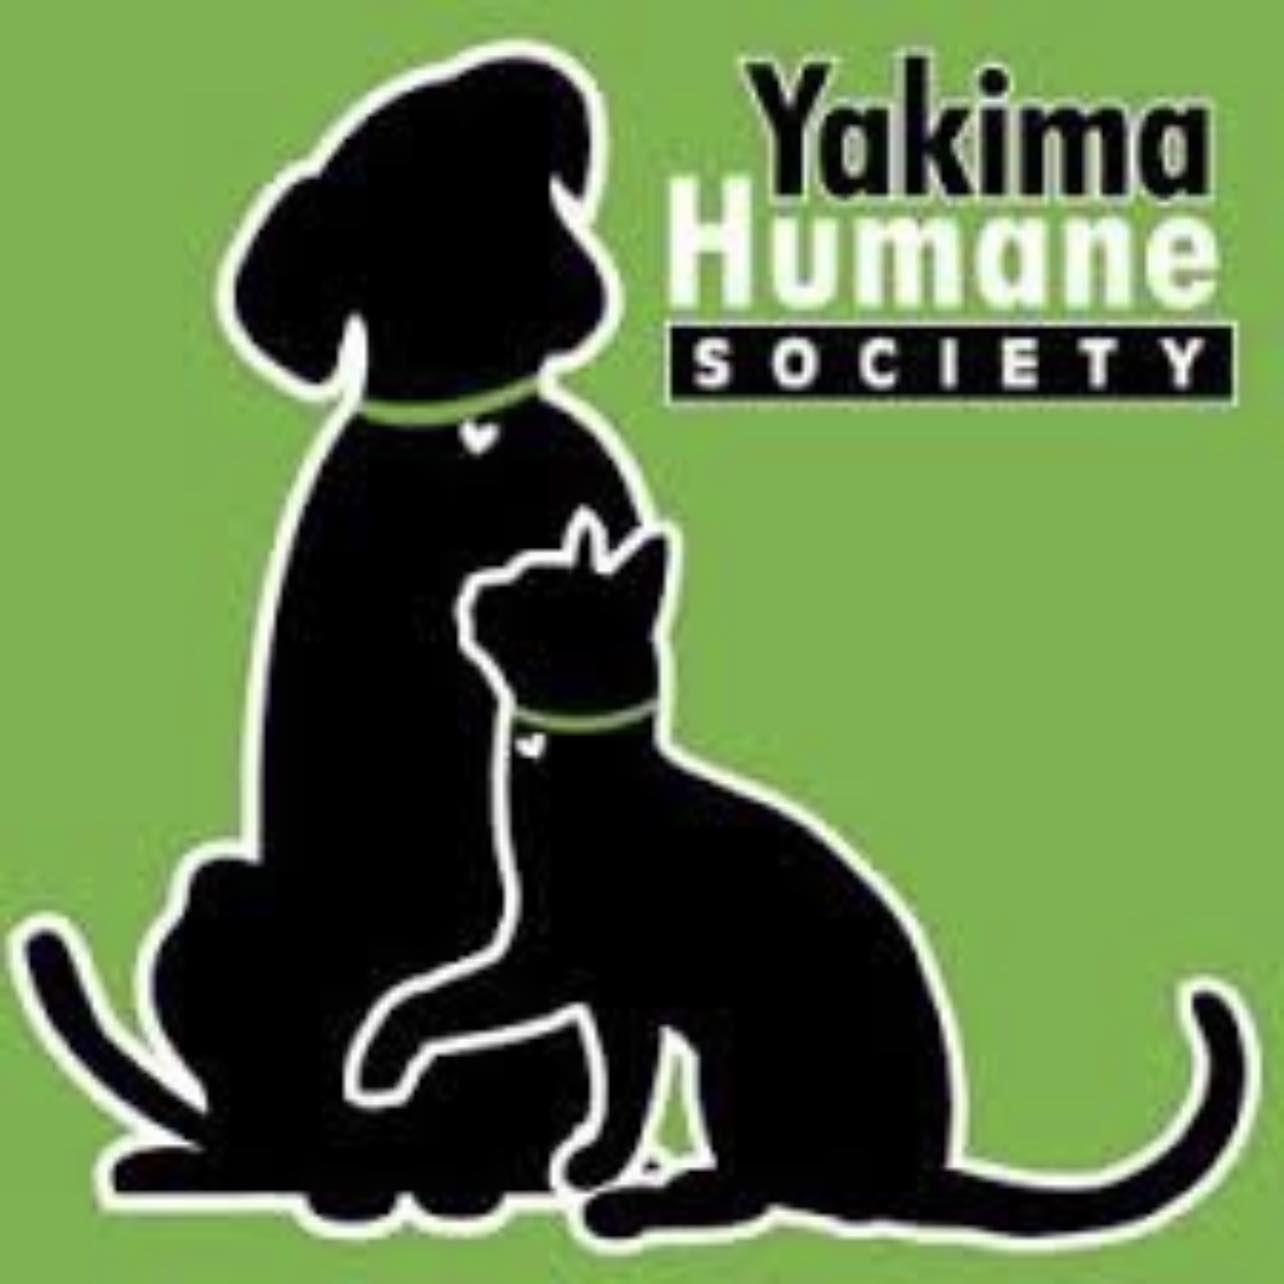 Yakima Humane Society